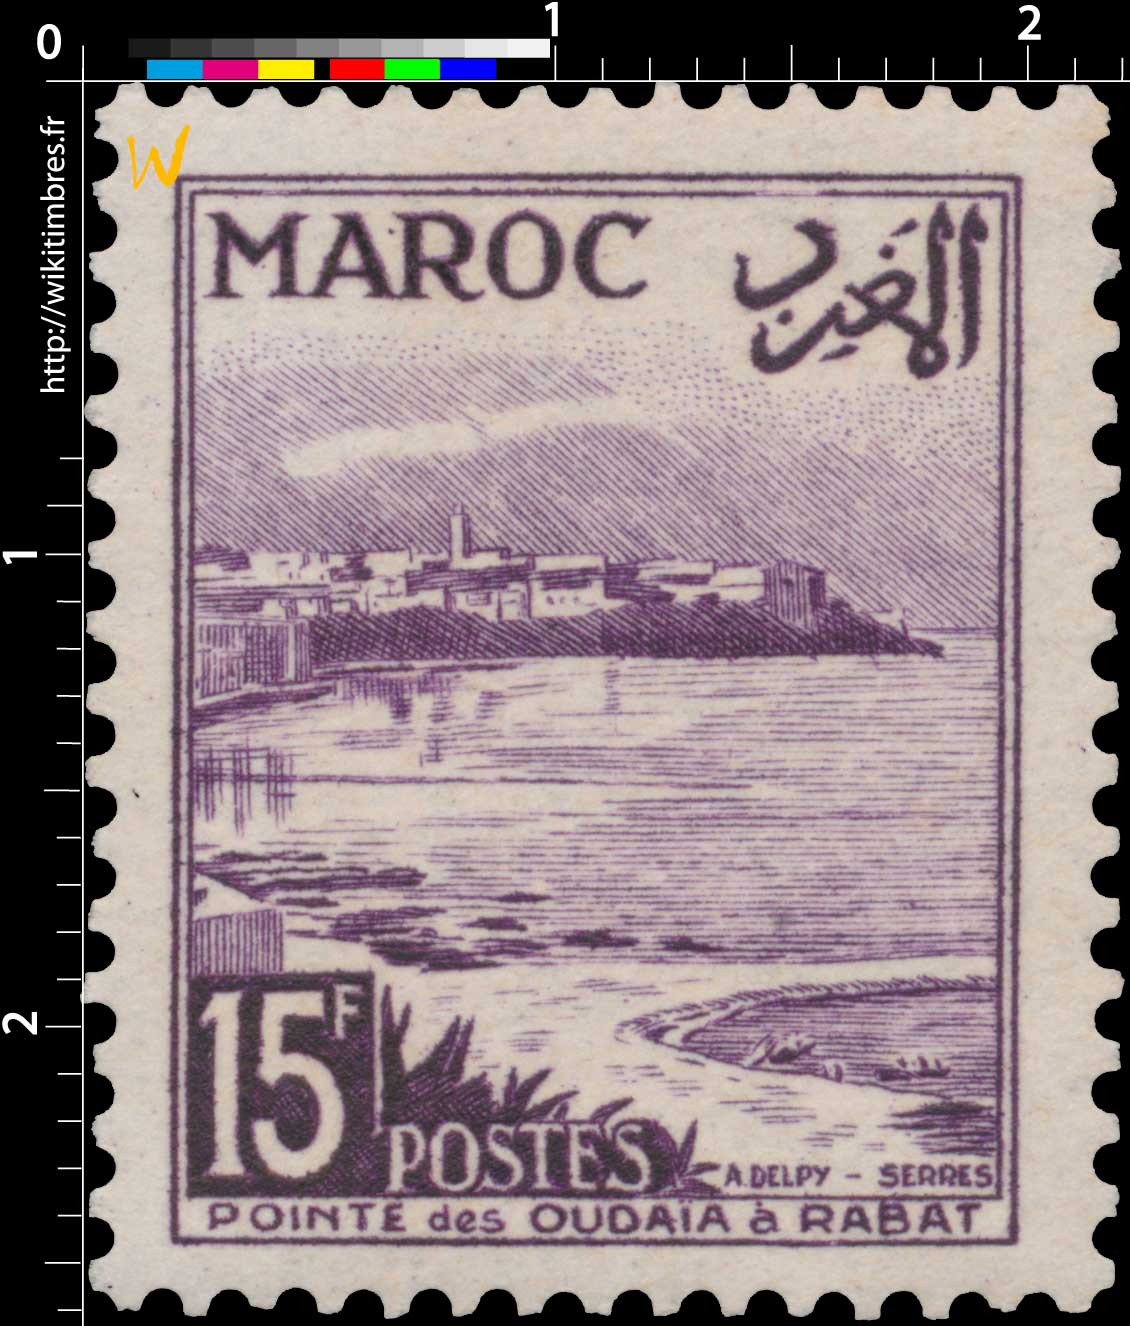 1951 Maroc - Pointe des Oudayas